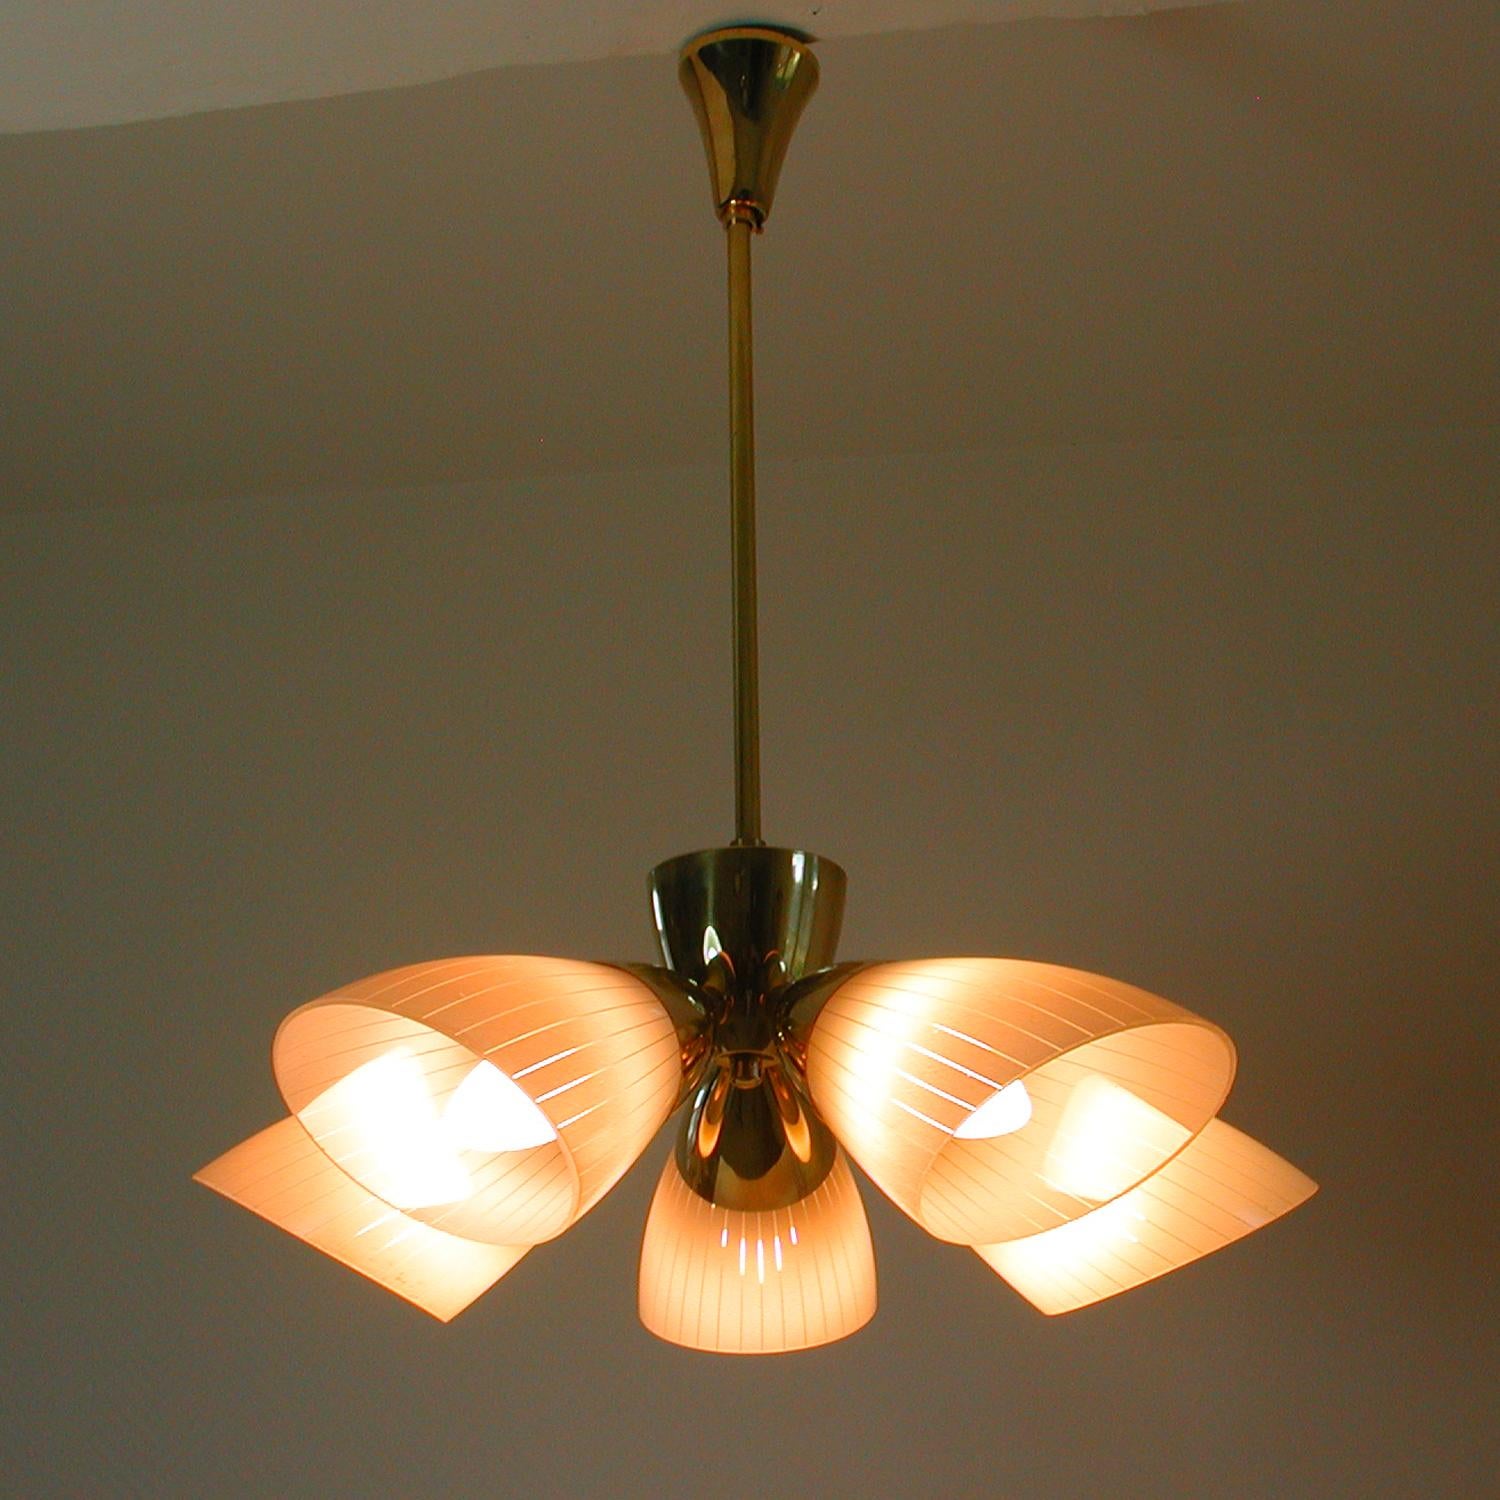 5 light sputnik chandelier